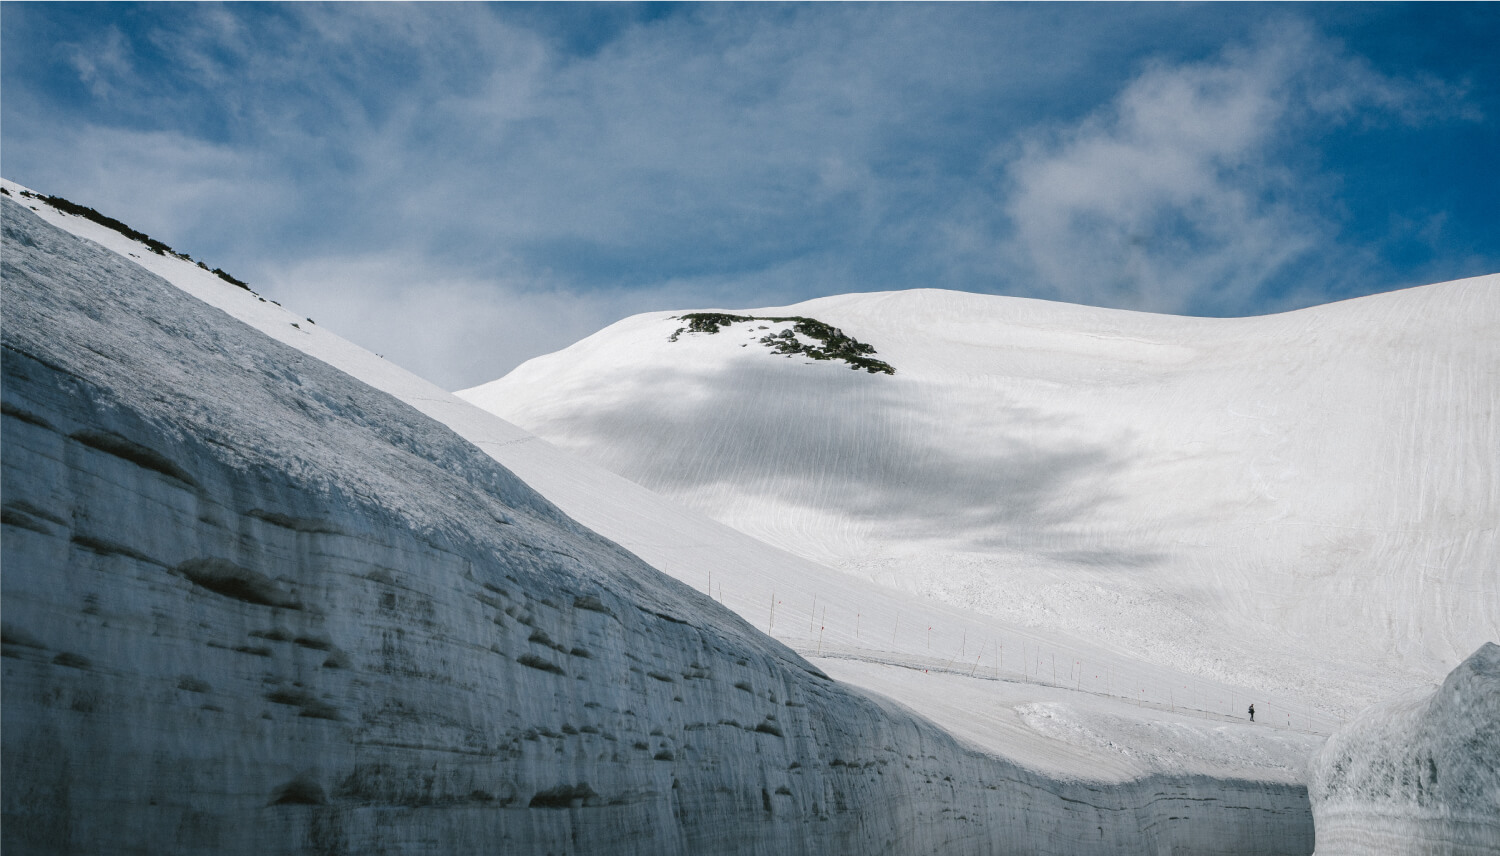 立山黒部アルペンルート 雪の大谷